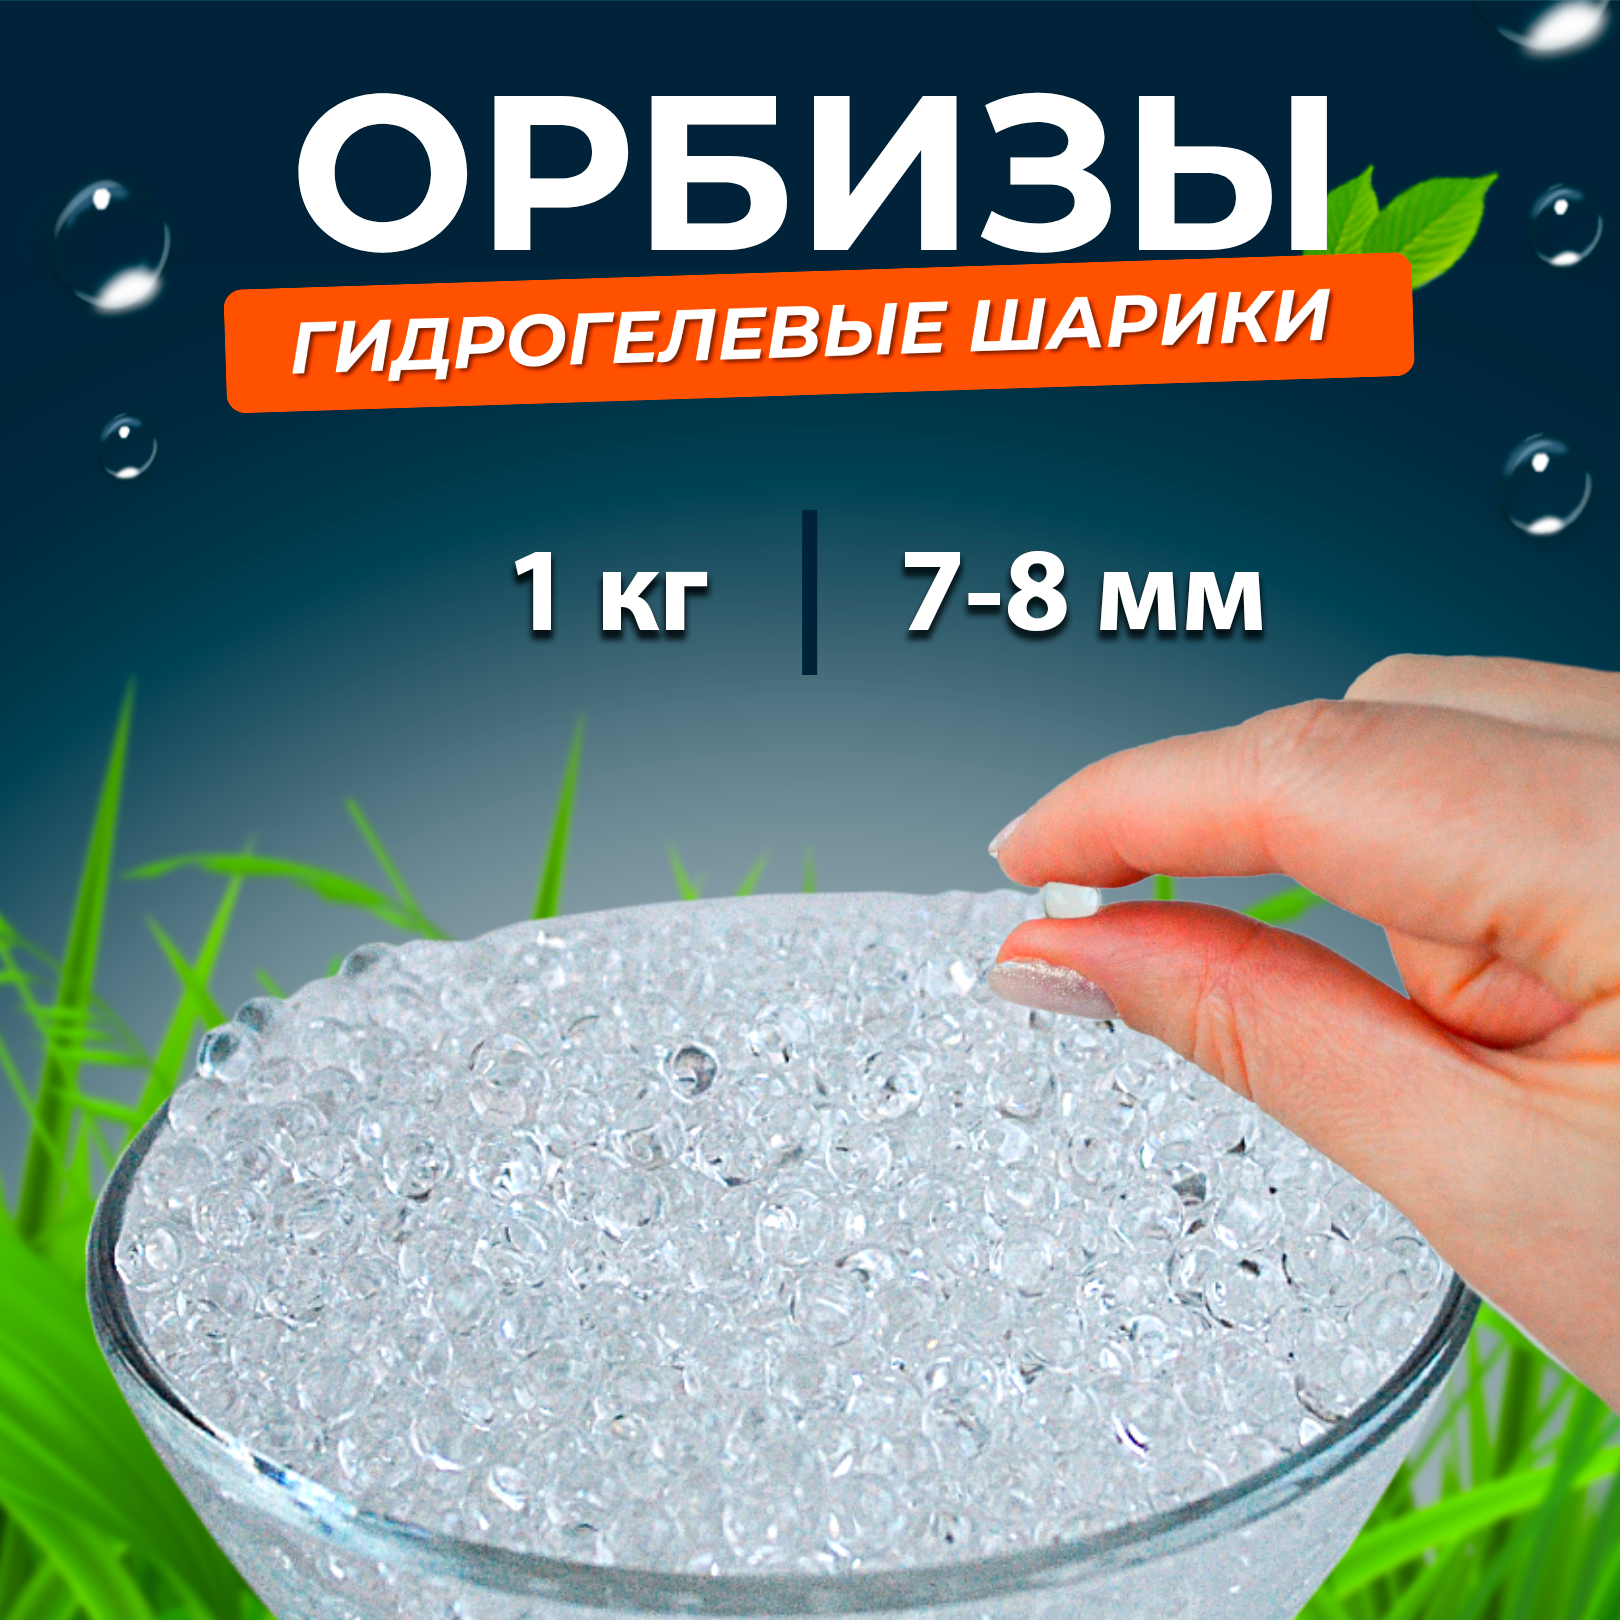 Орбис шары, 1 кг. сухих гранул, 7-8 мм, оптом, (аквагрунт), прозрачные